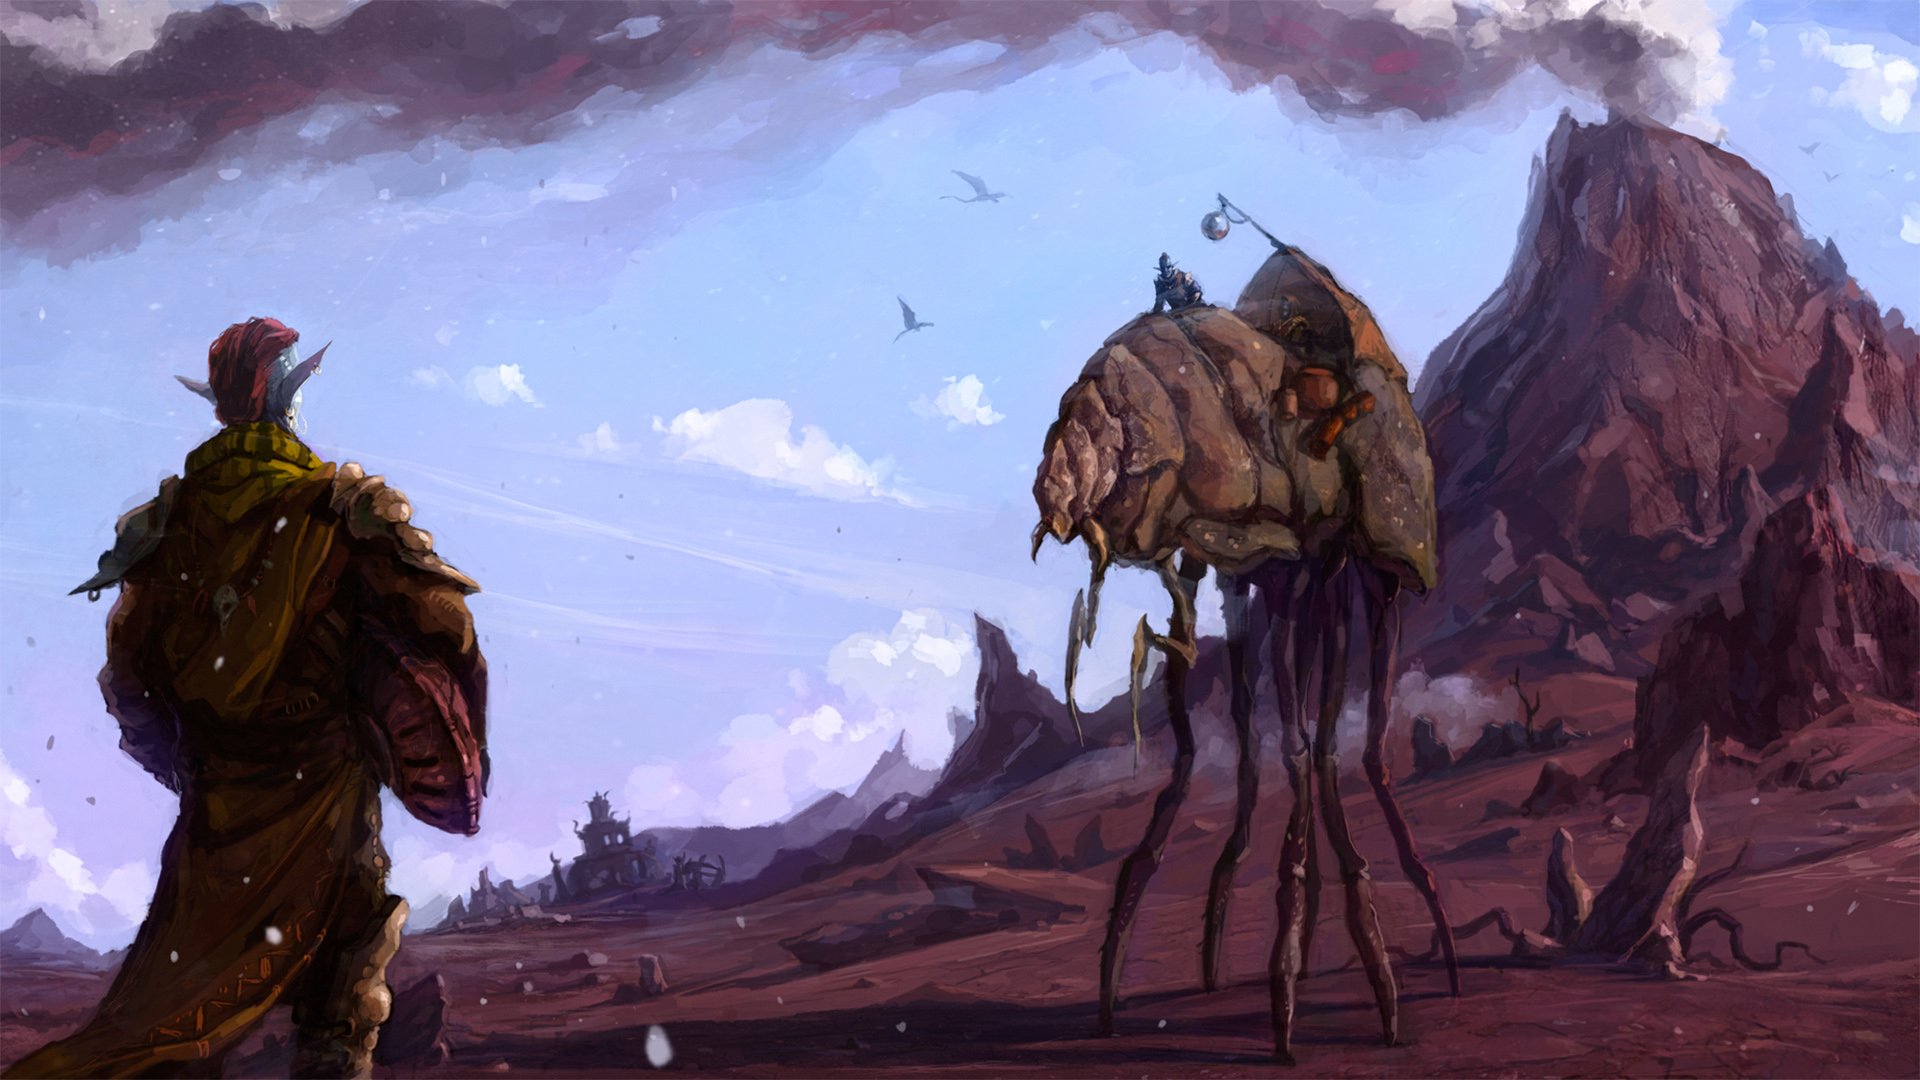 The Elder Scrolls Iii Morrowind Hd Wallpaper Background Image 1920x1080